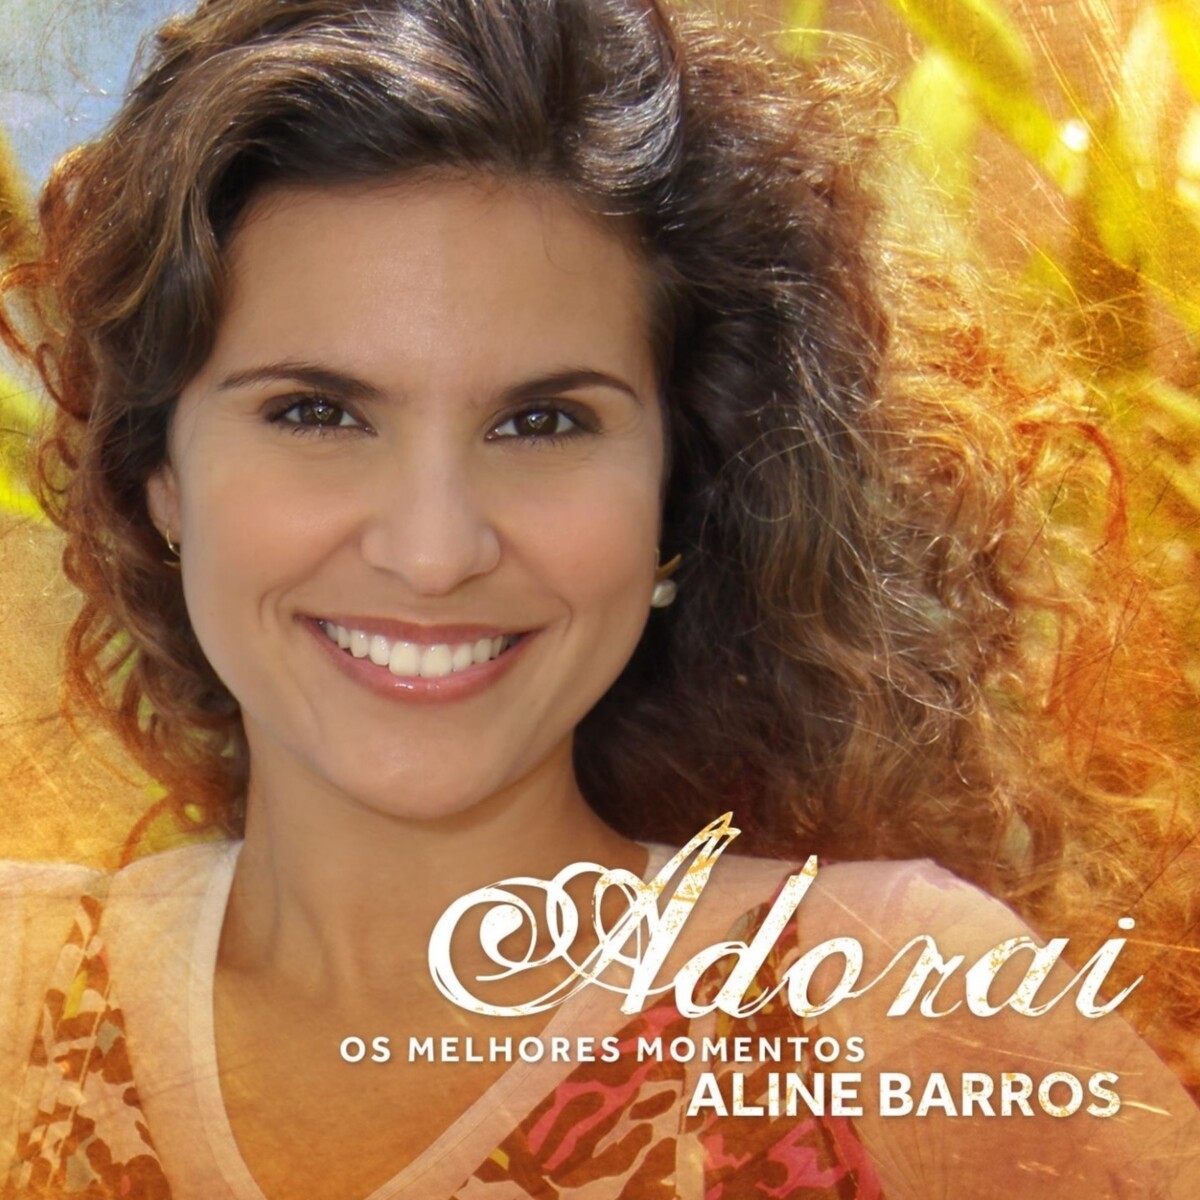 Download Aline Barros - Adorai (Os Melhores Momentos) [Mp3 Gospel] via Torrent